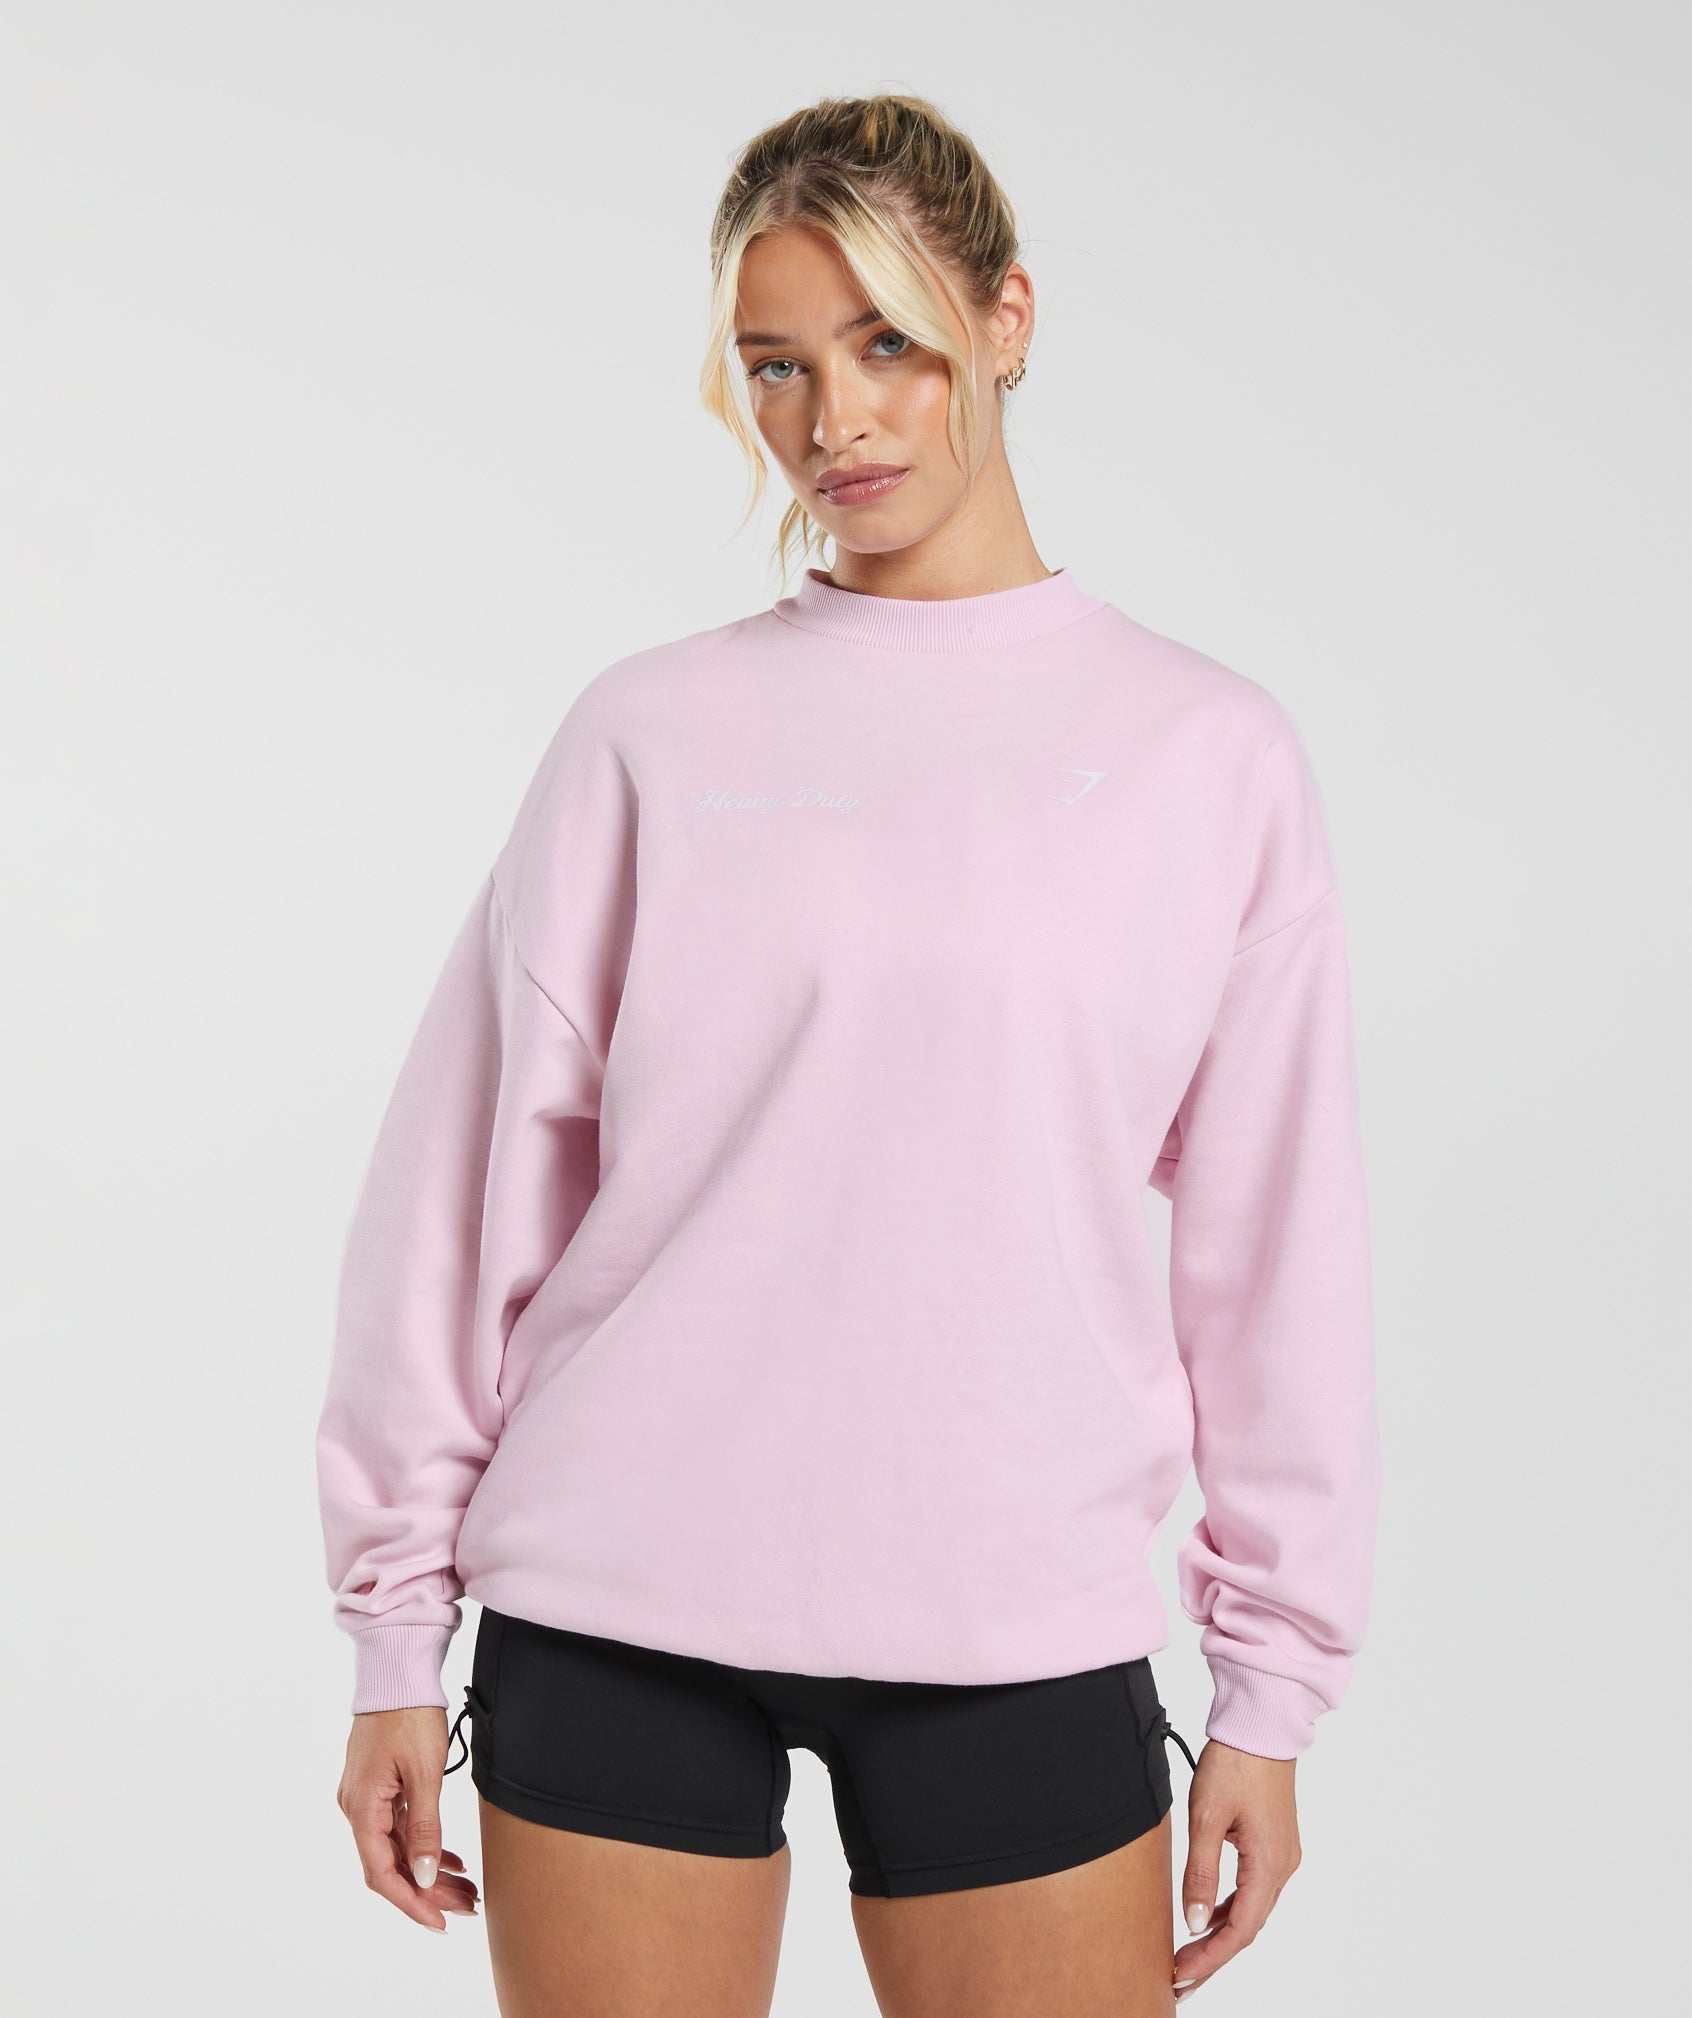 Heavy Duty Oversized Sweatshirt in Lemonade Pink - view 2